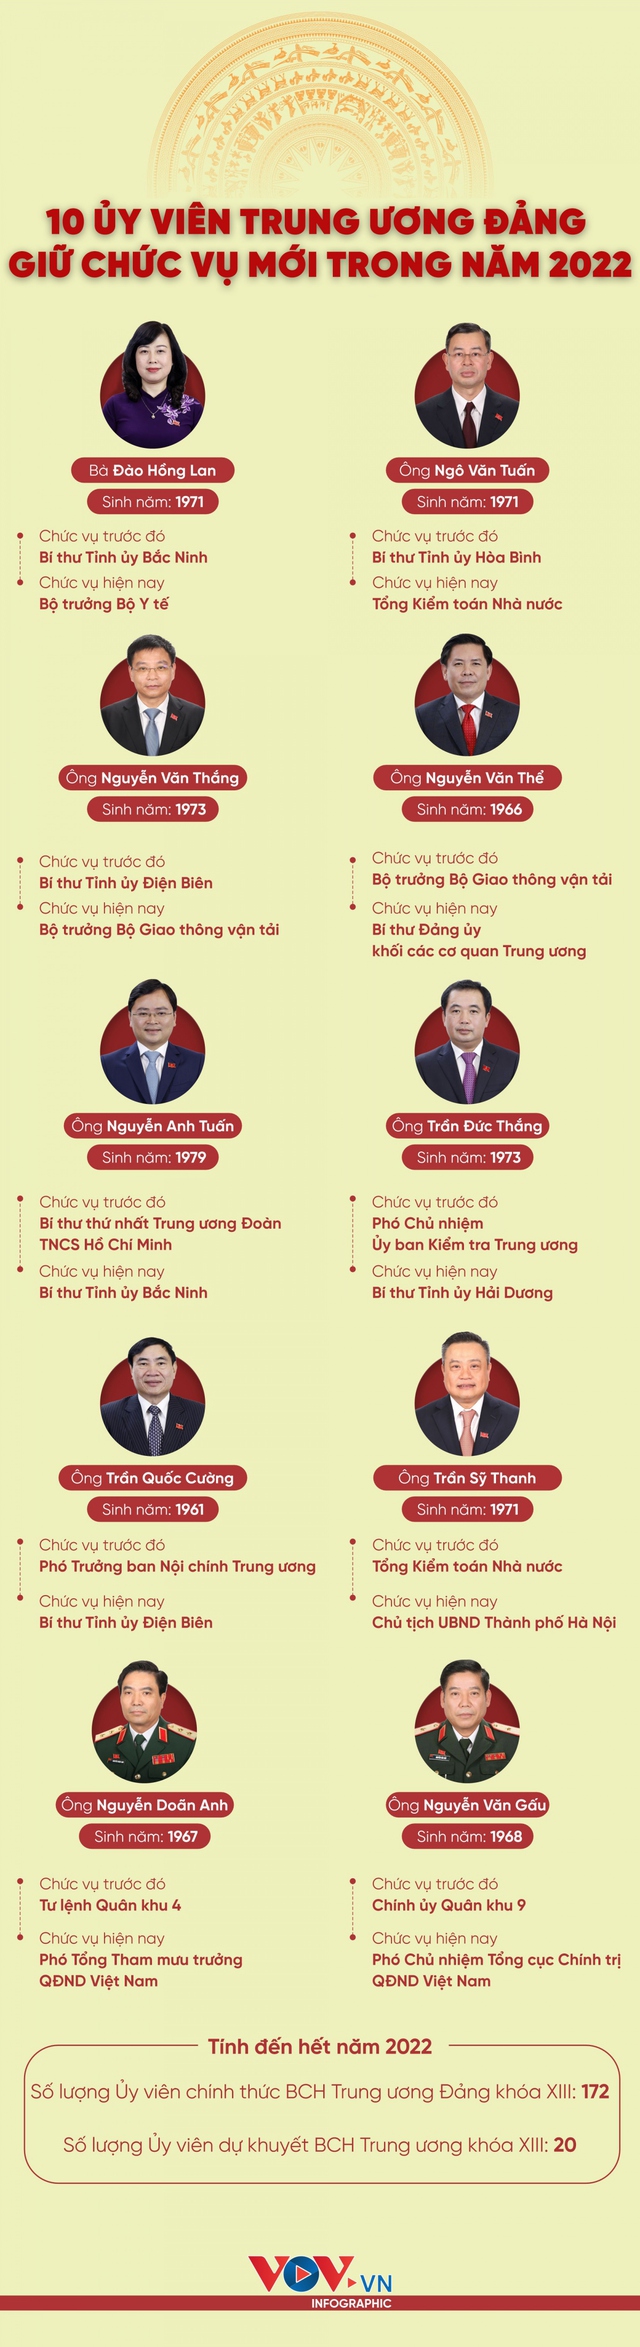 10 ủy viên Trung ương Đảng khóa XIII giữ chức vụ mới trong năm 2022 - Ảnh 1.